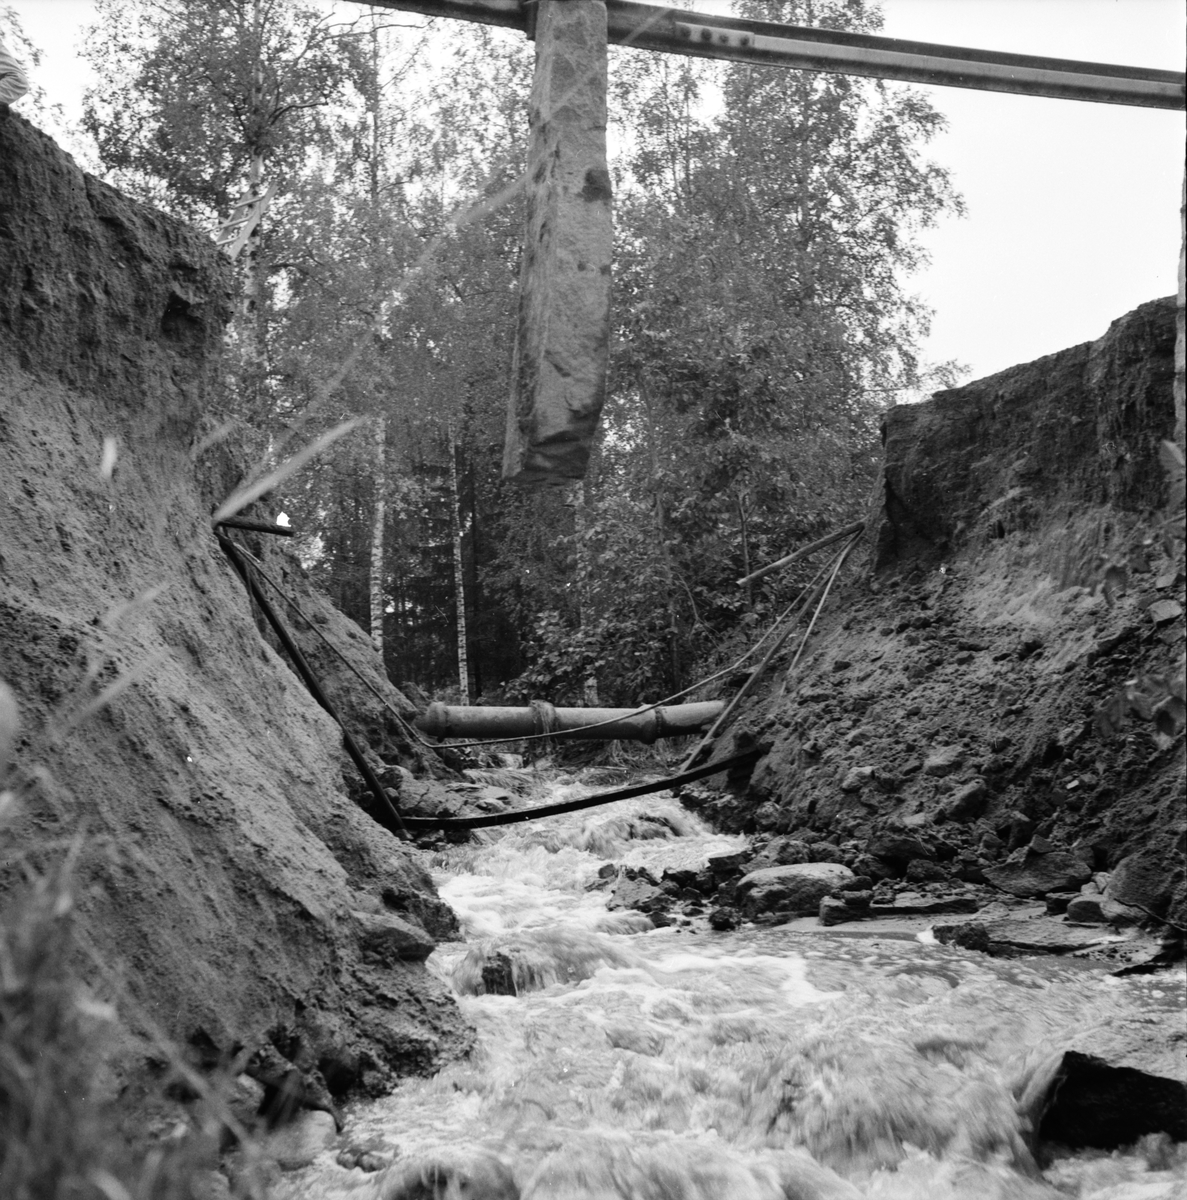 Undersvik,
Vägras i Simeå,
September 1965